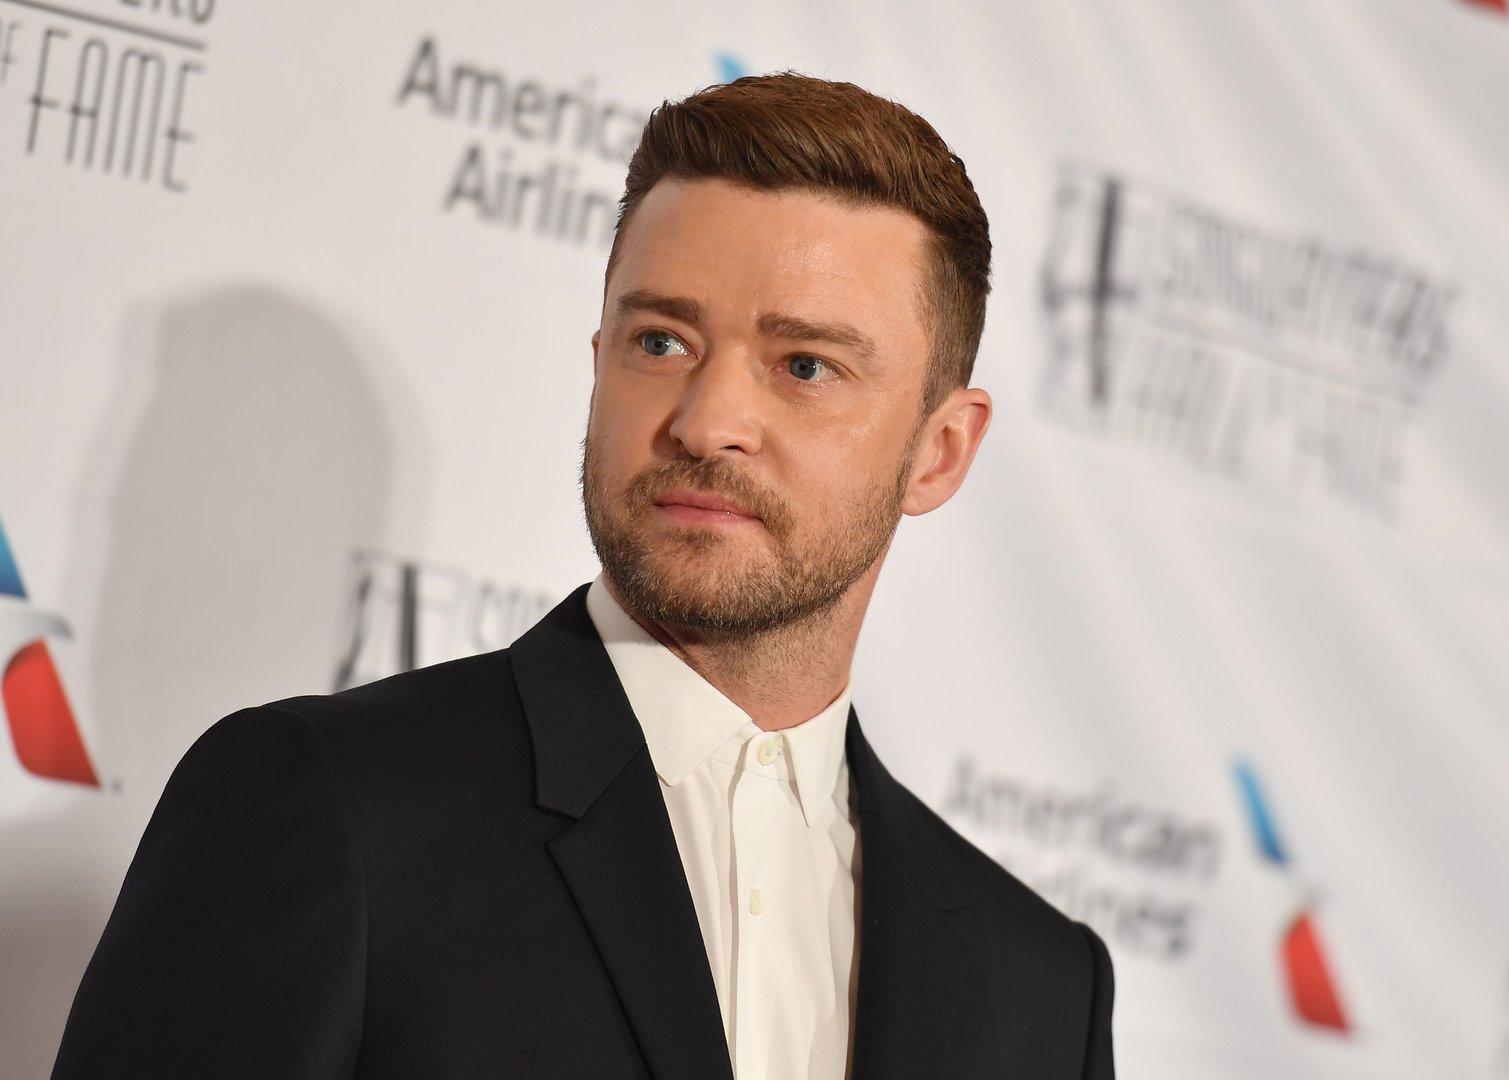 Verhaftung von Justin Timberlake: Neue Details zu fahrlässigem Verhalten